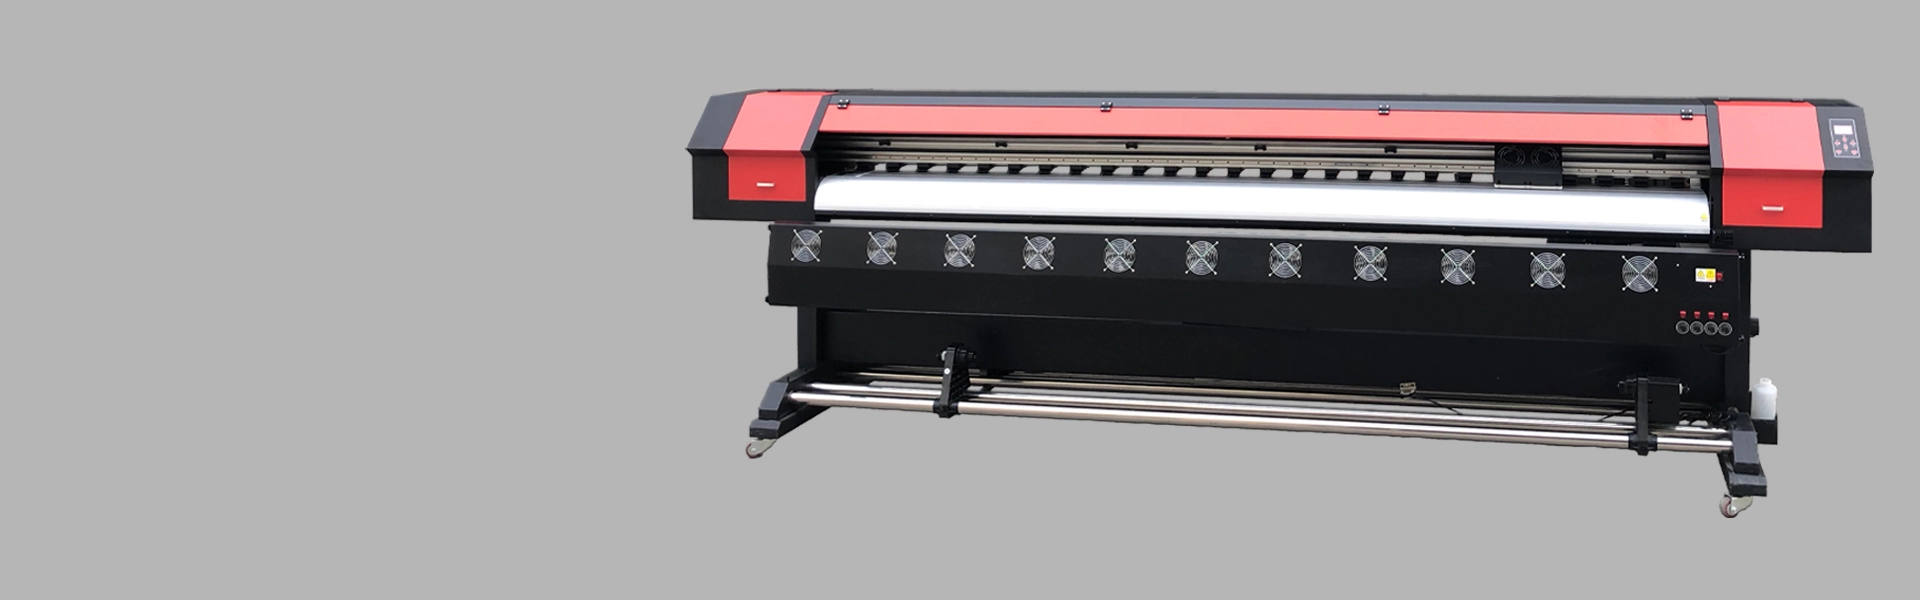 Принтер XP600 3,2 м